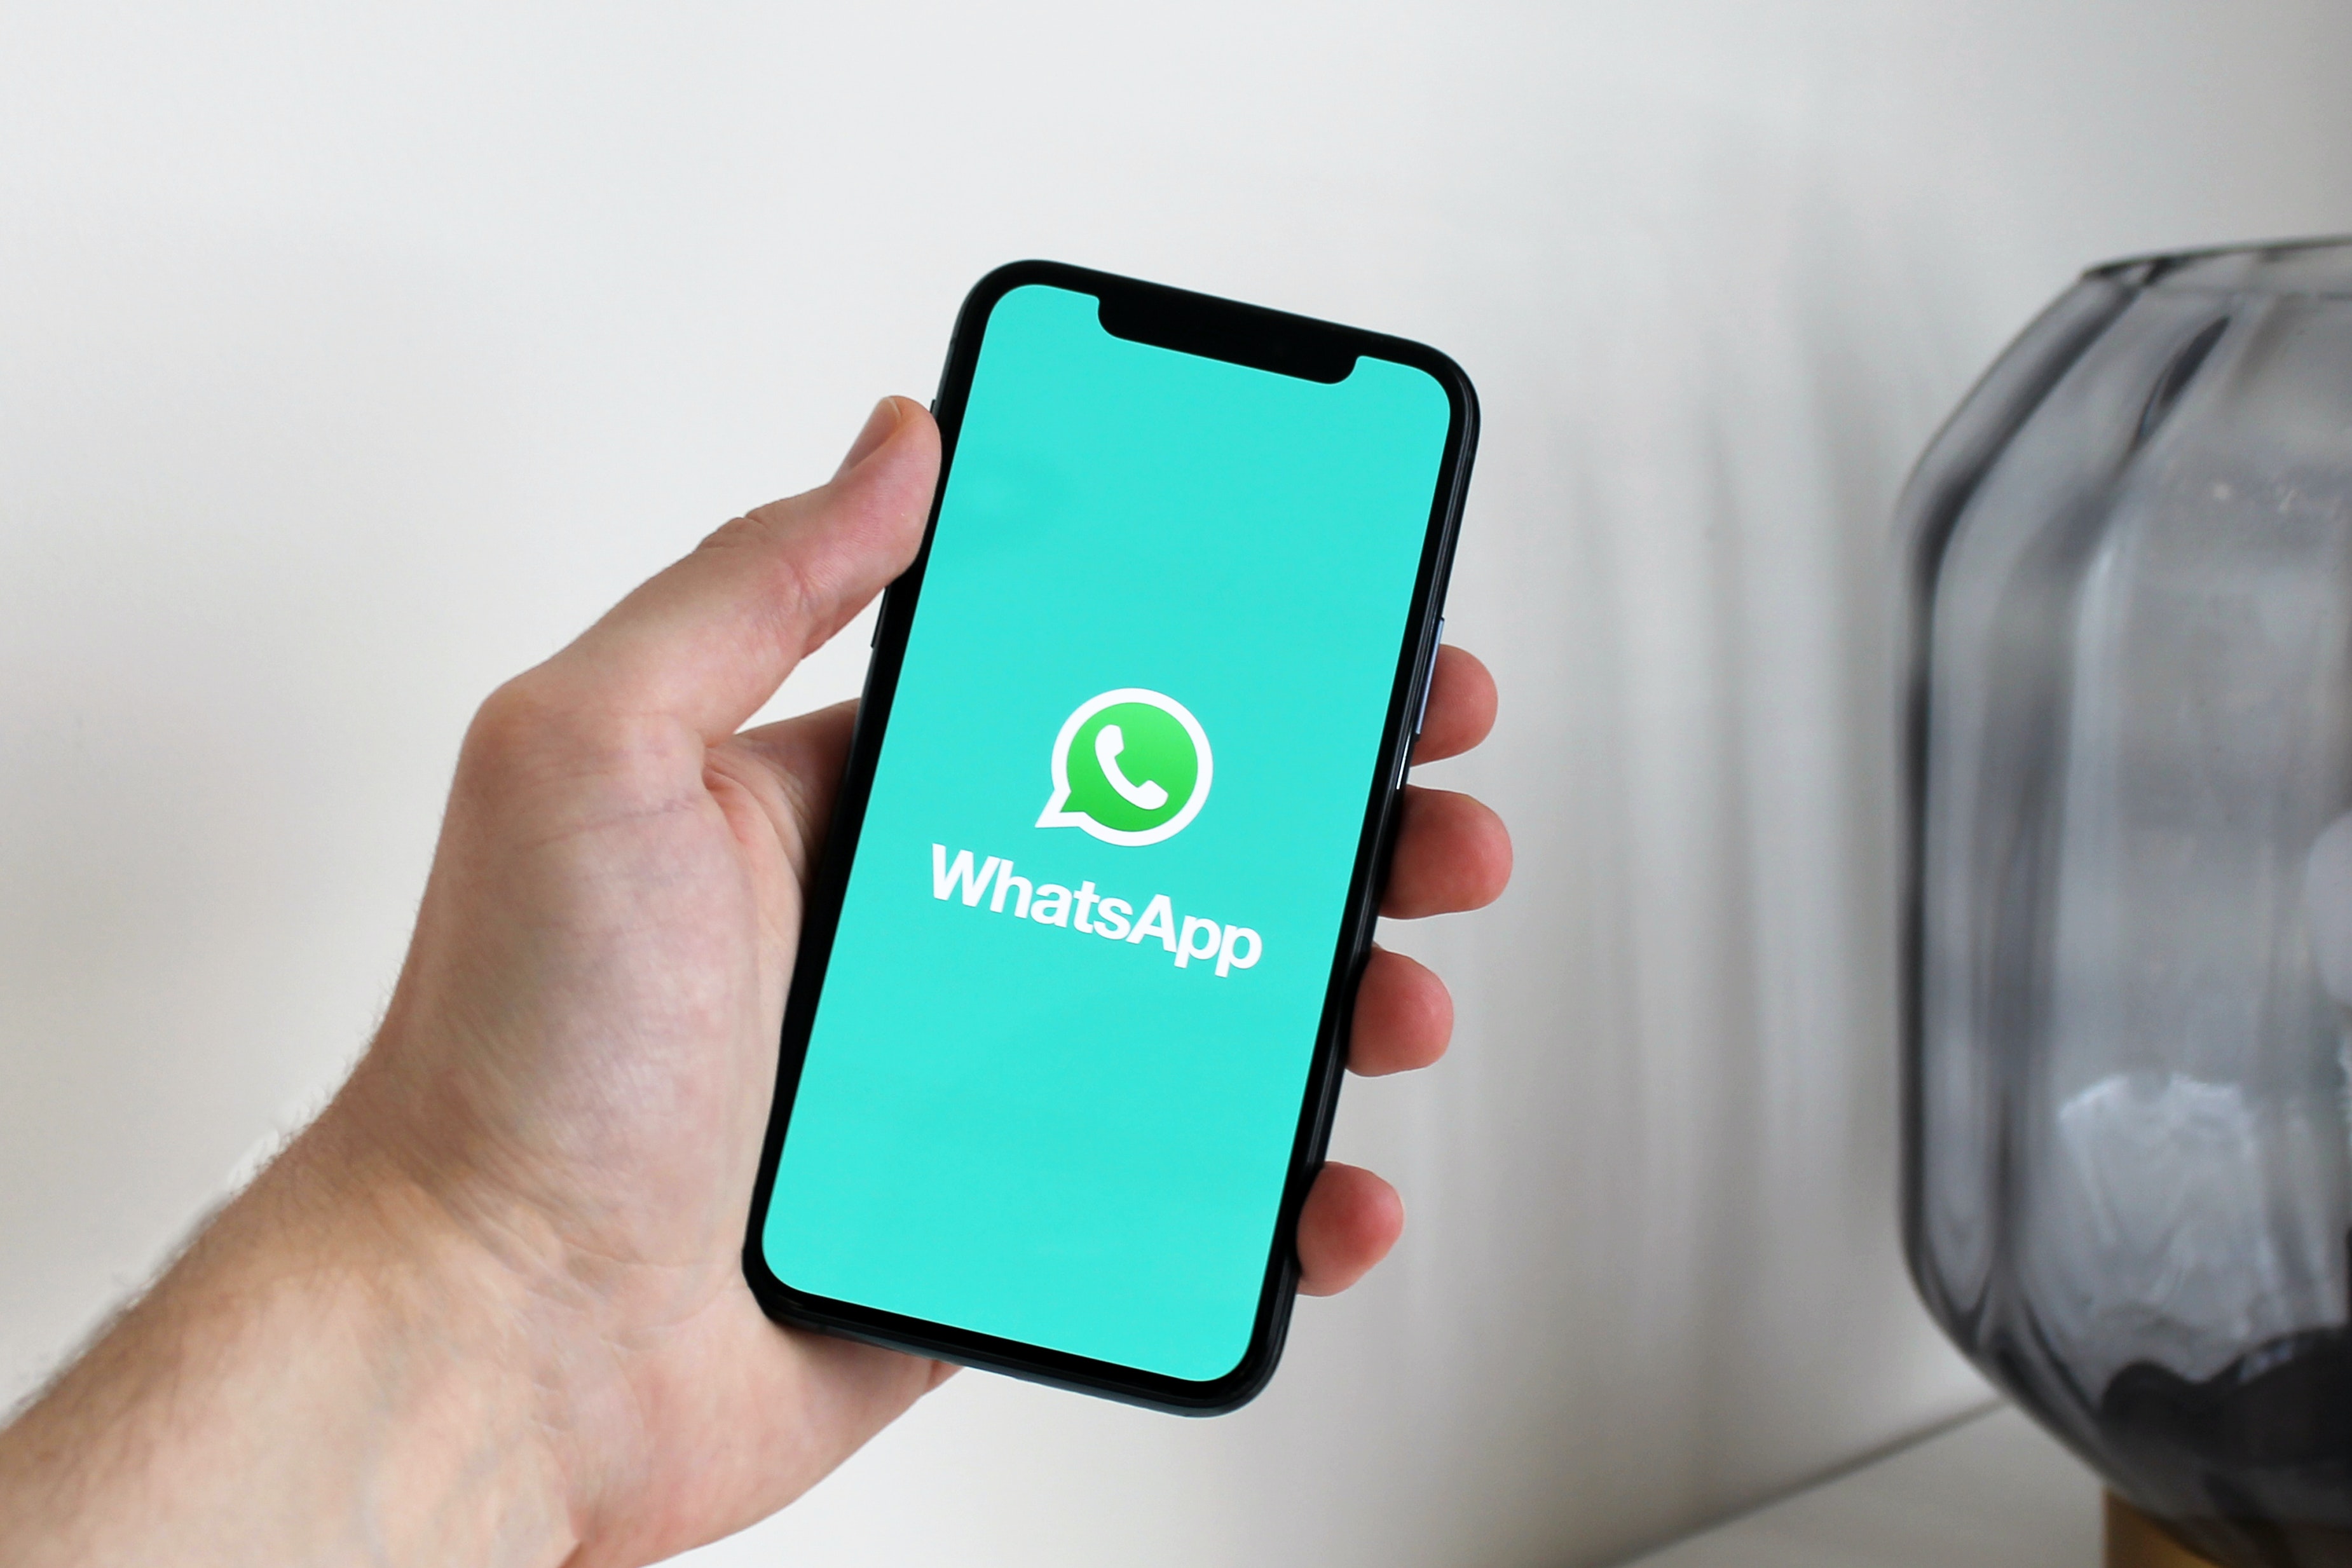 WhatsApp më në fund vendosi të sjellë përditësimin e shumëpritur